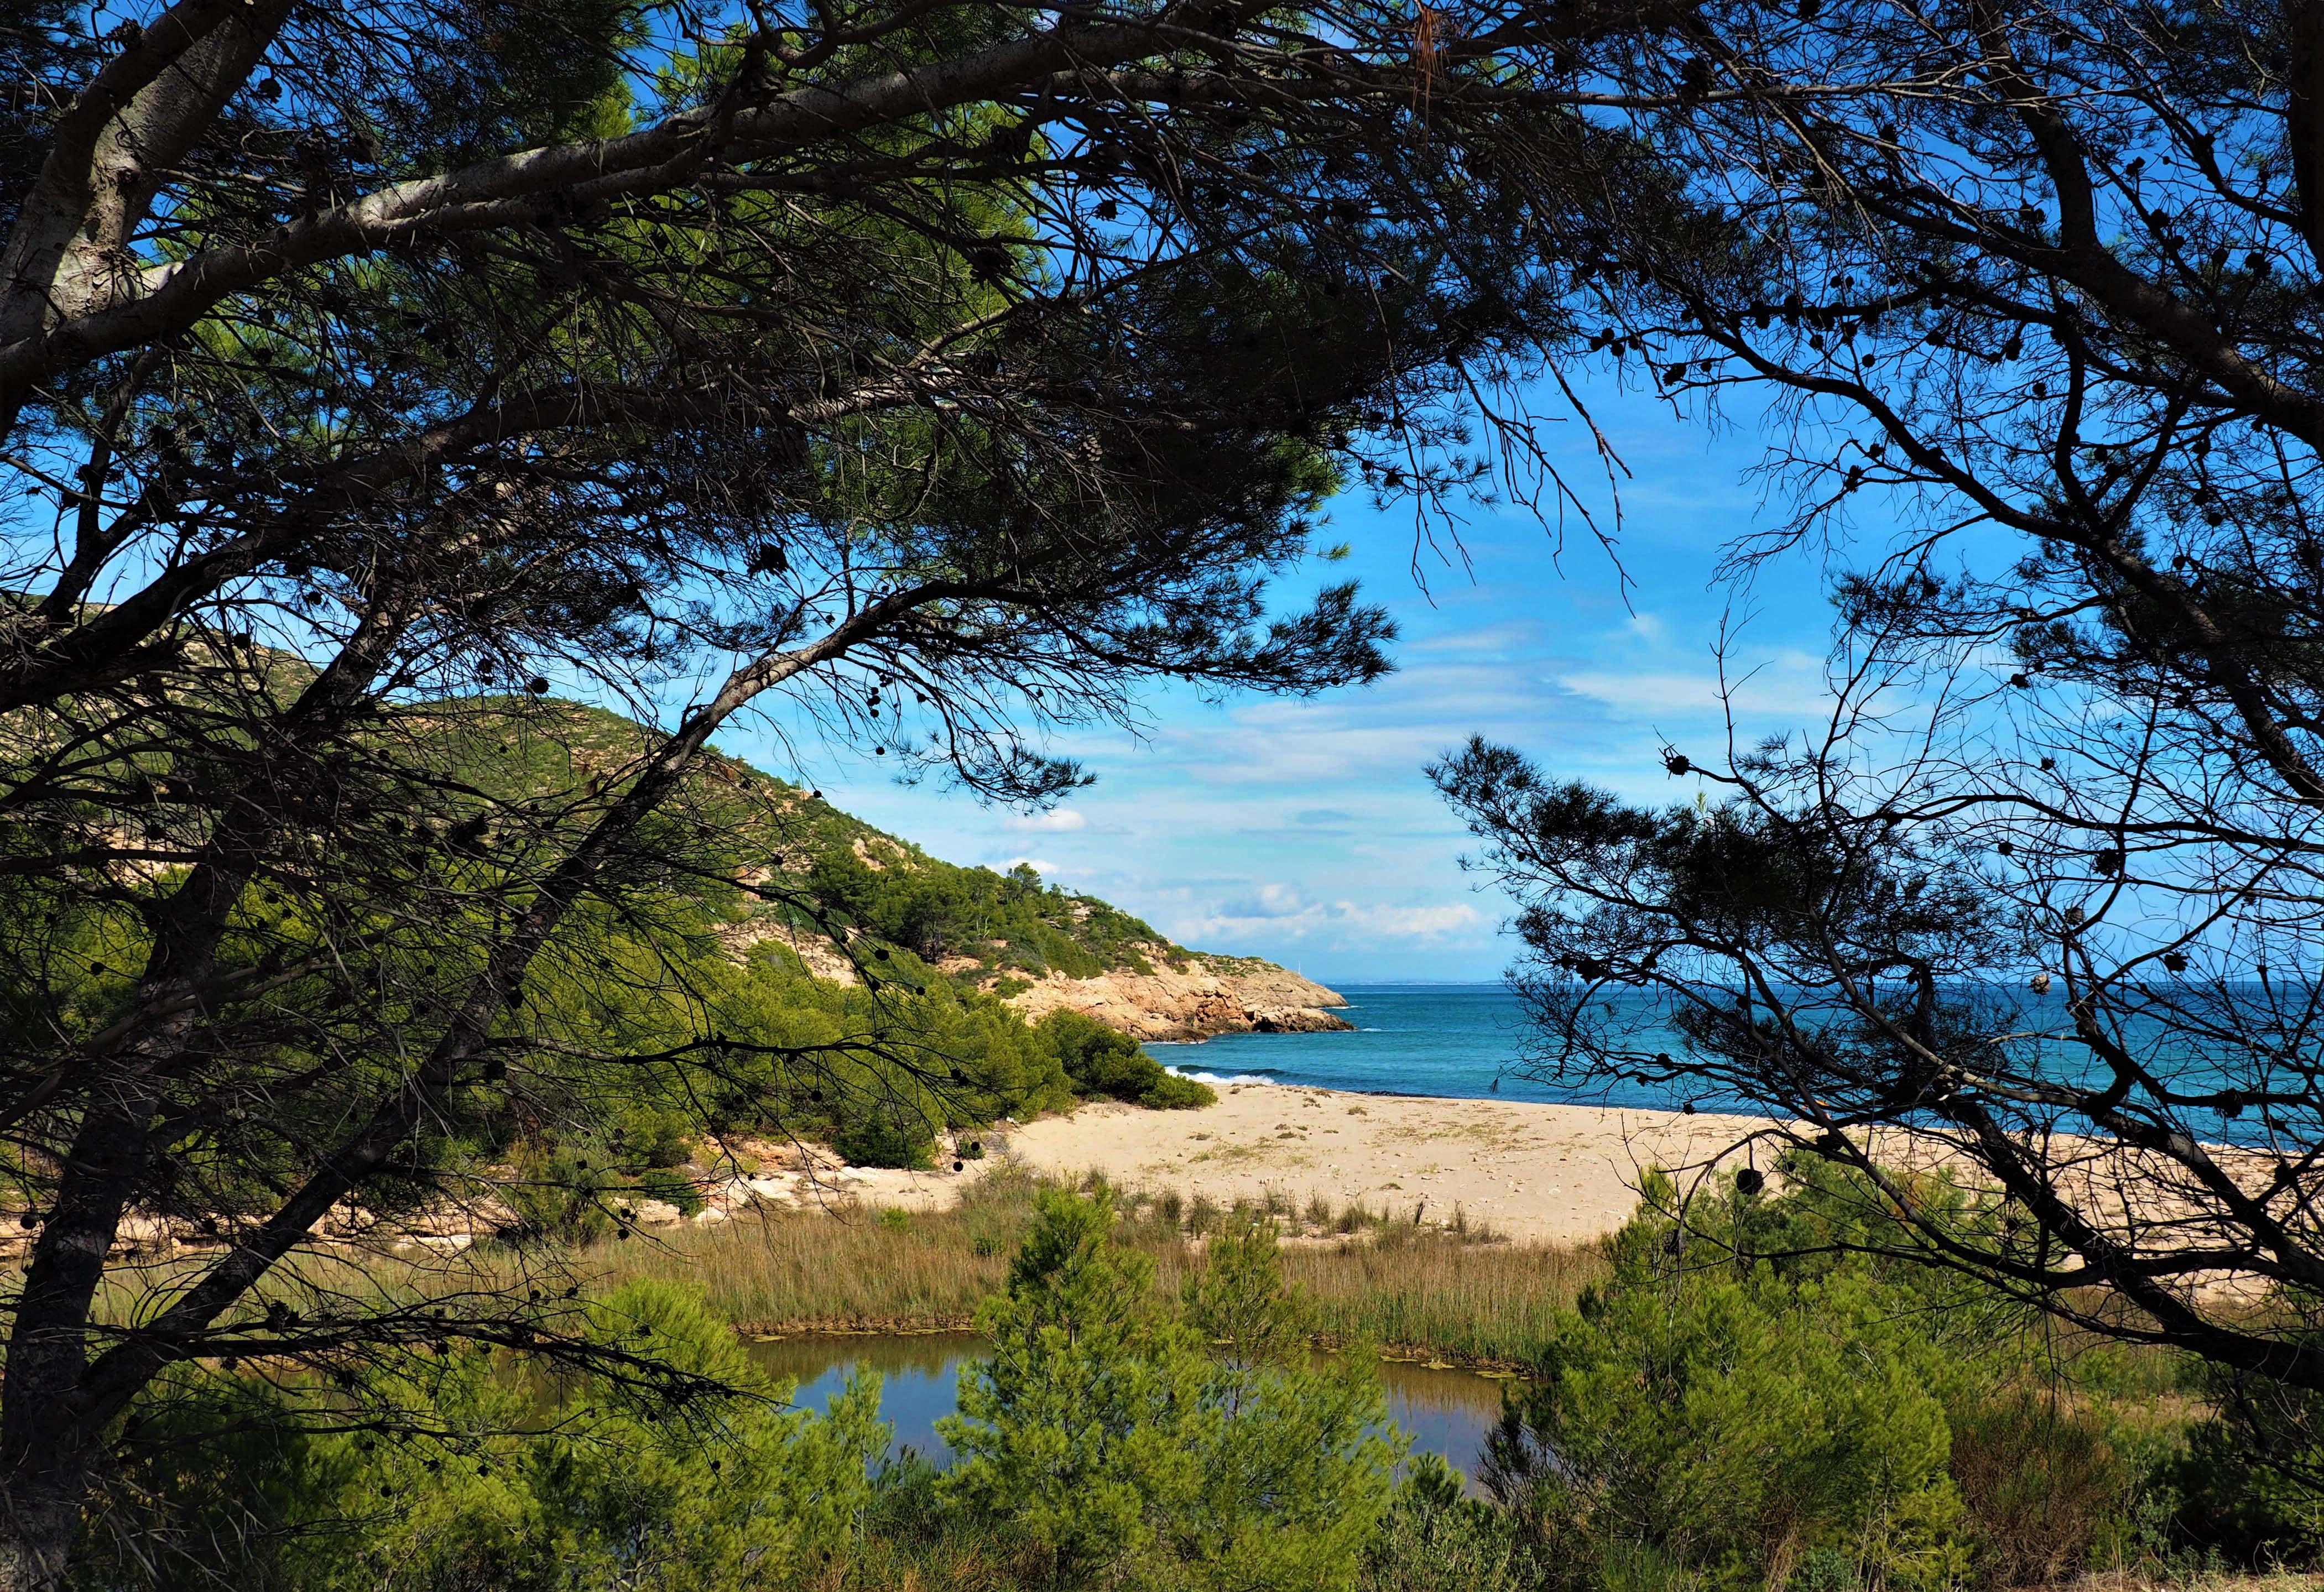 Cinc platges de Vandellòs i l’Hospitalet de l’Infant obtenen la Bandera Ecoplayas 2021